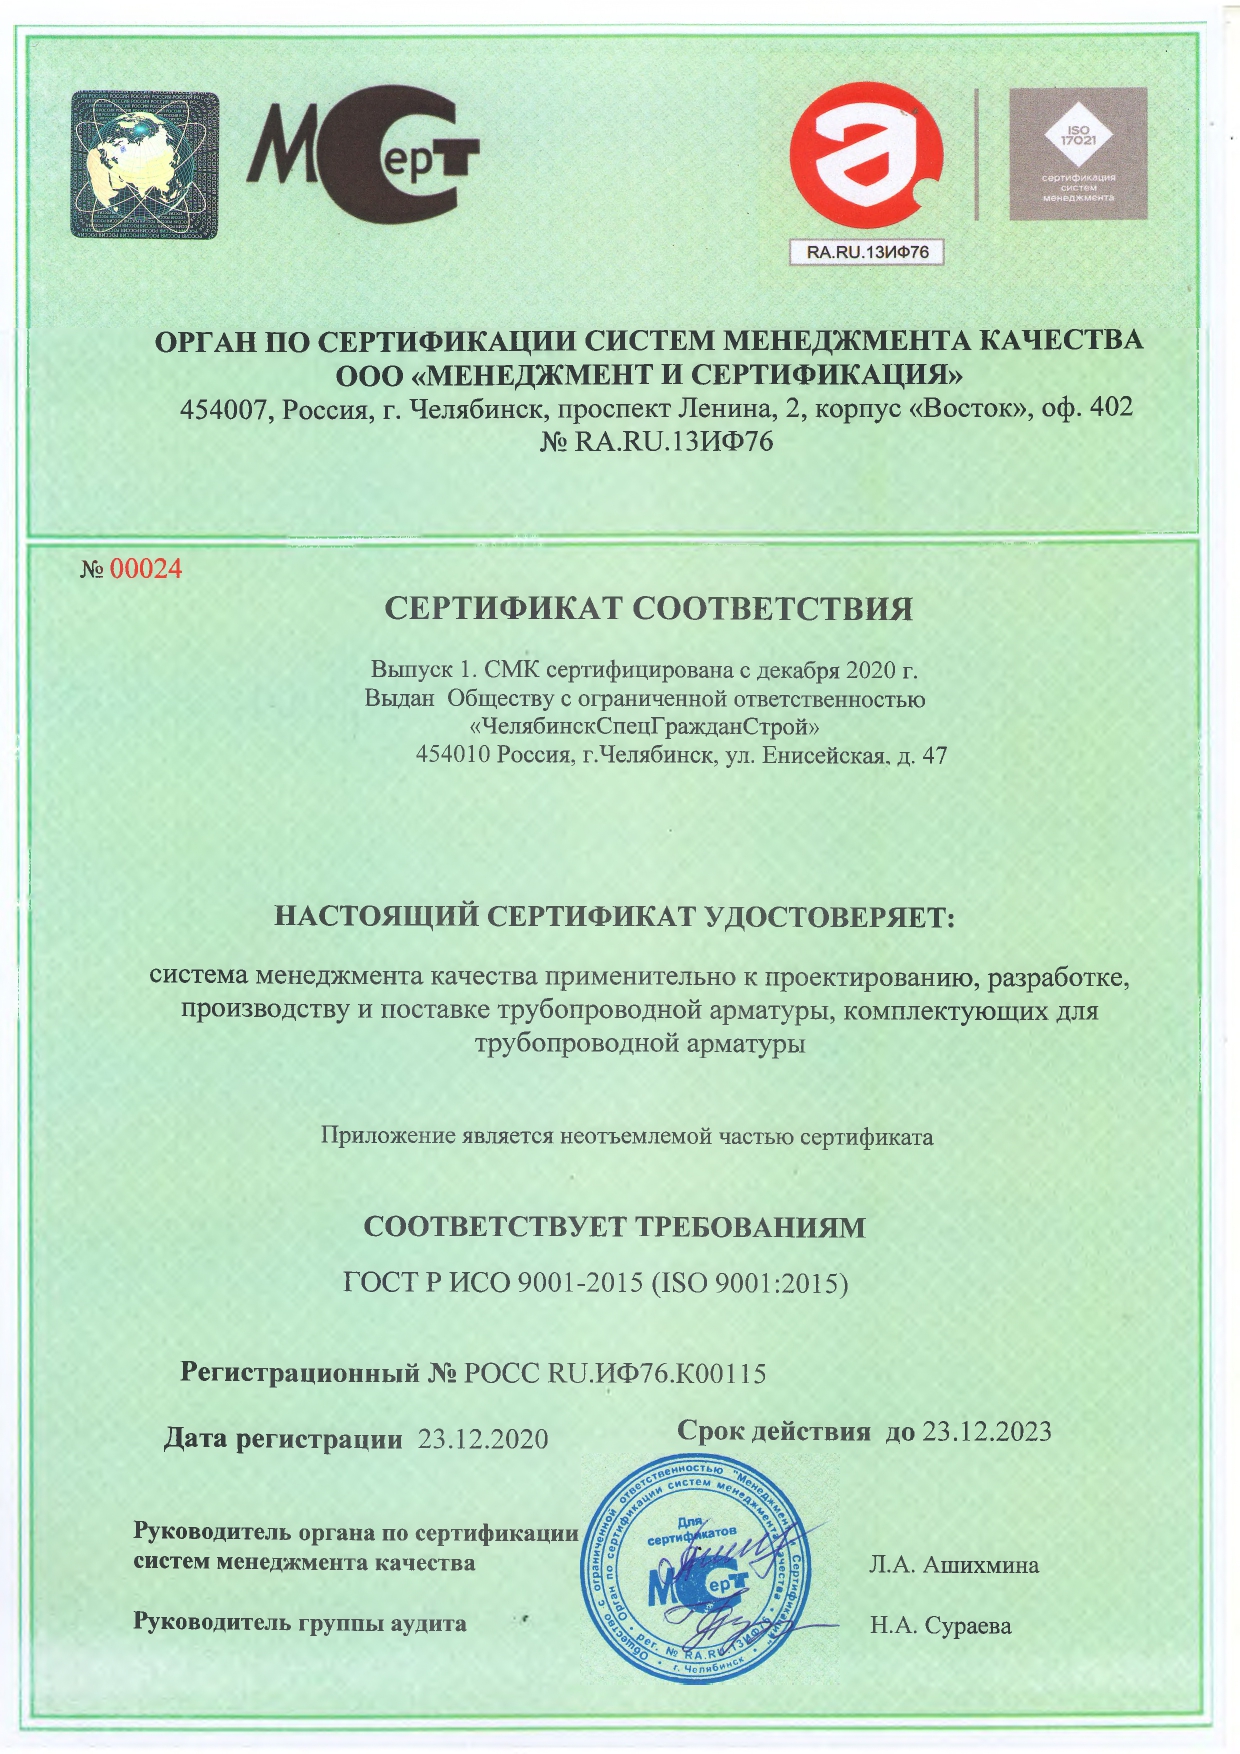 Сертификат соответствия № 0024